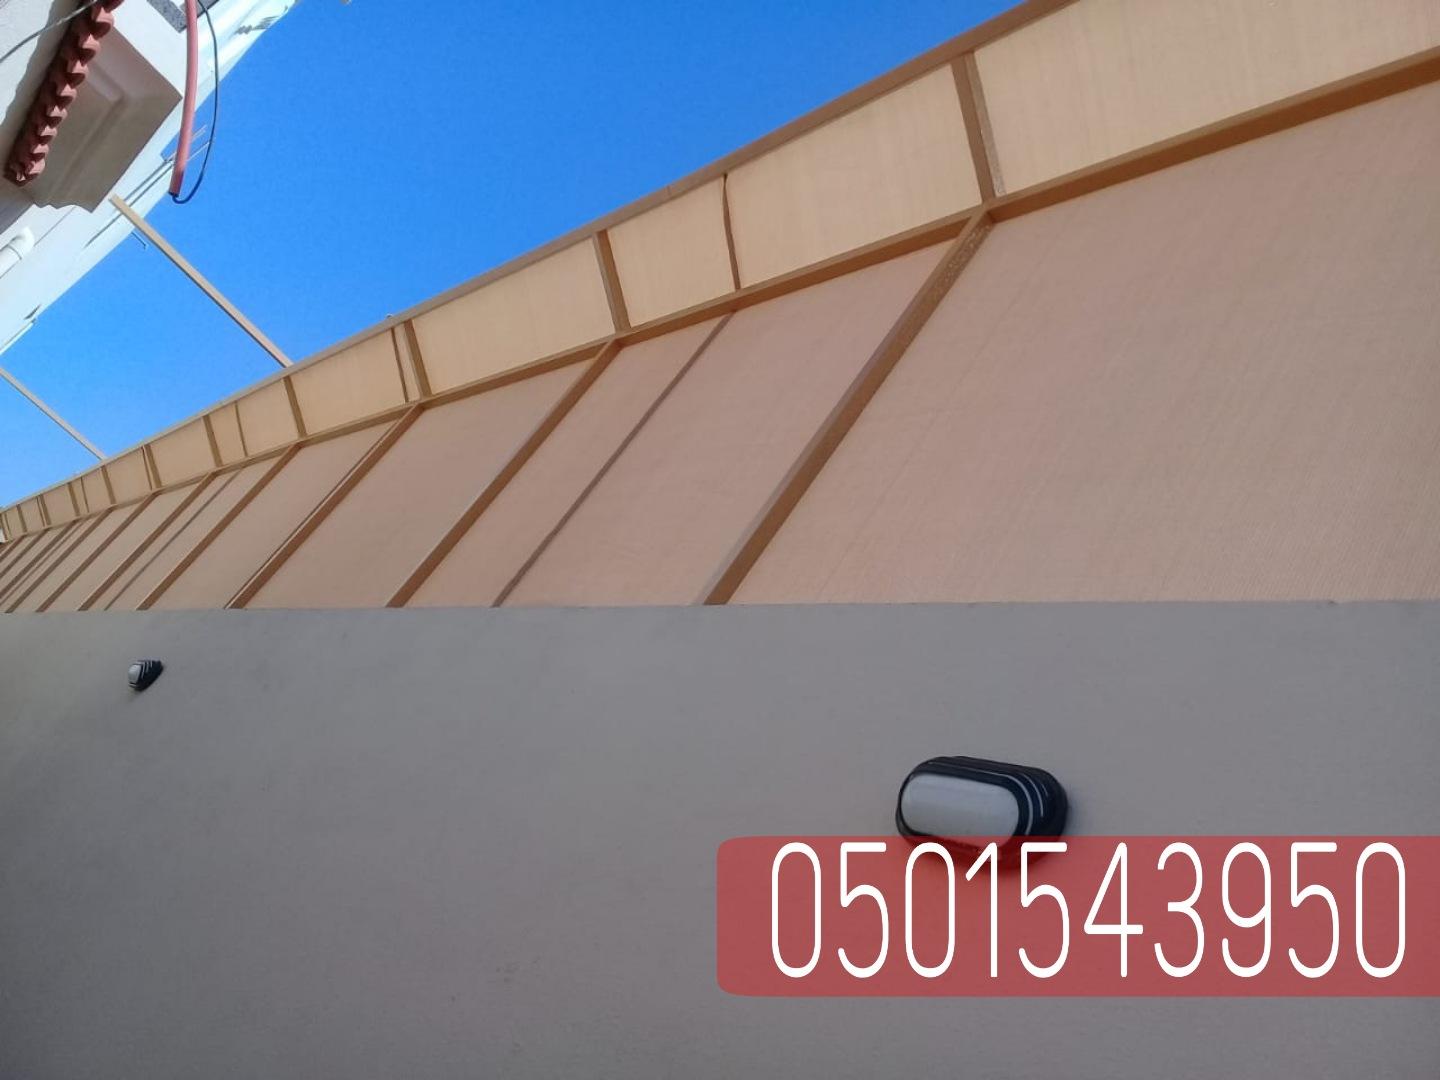 تركيب سواتر جداريه في الرياض جده,0501543950 891142333